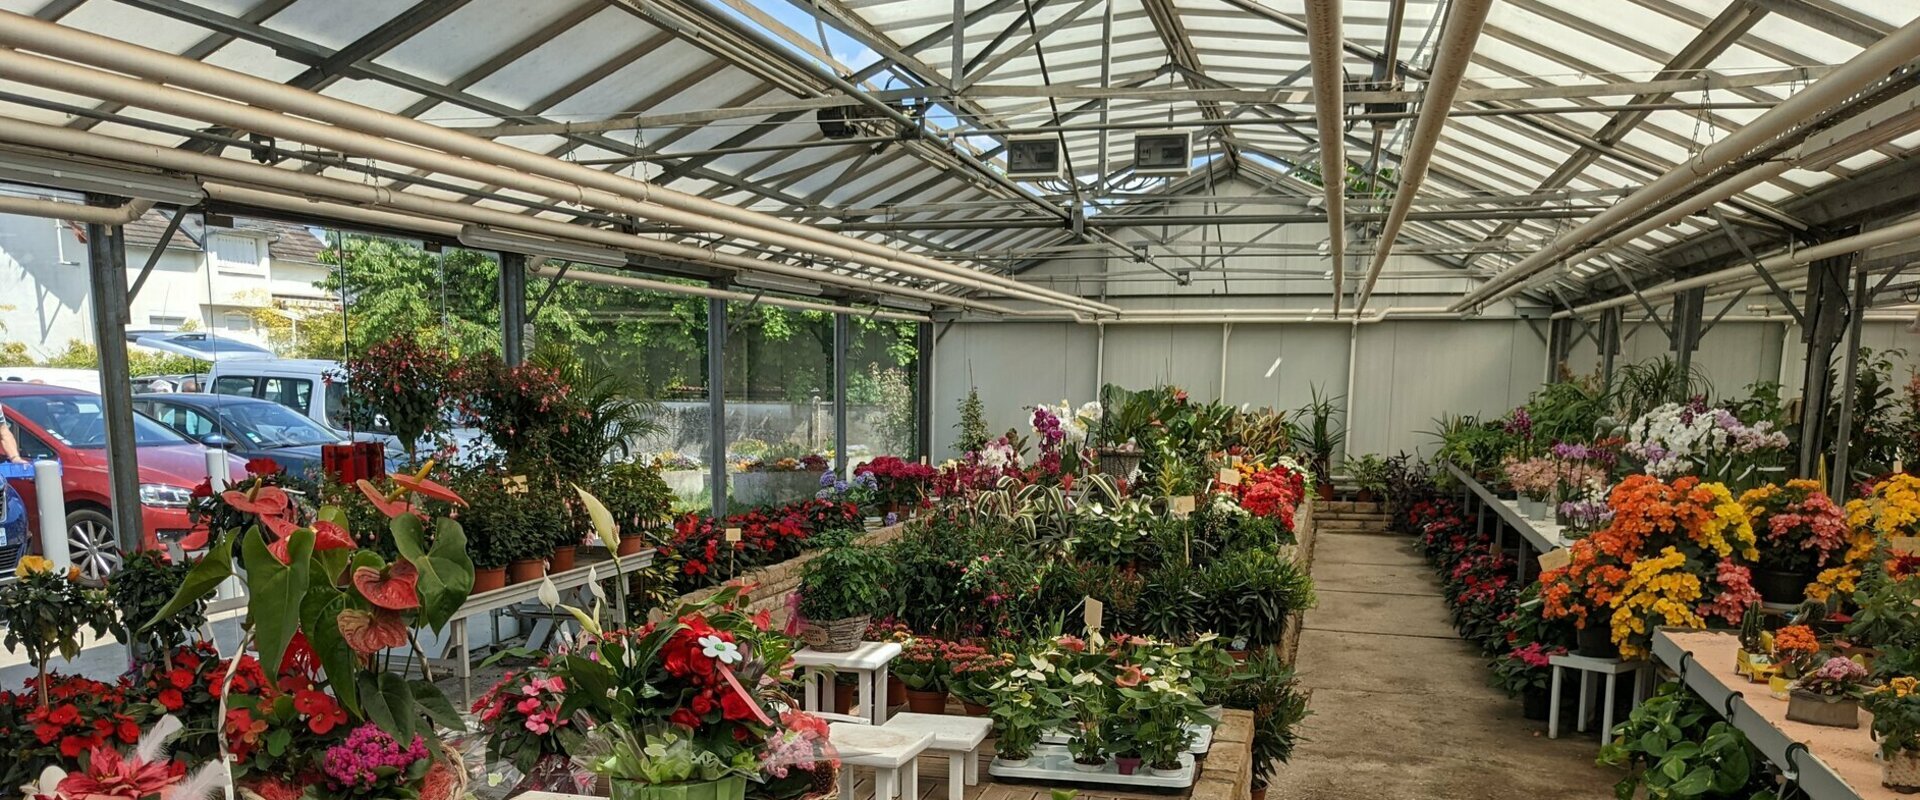 Bienvenue dans la jardinerie - Fleuristerie - horticulteur Logeart à Villemandeur dans le 45